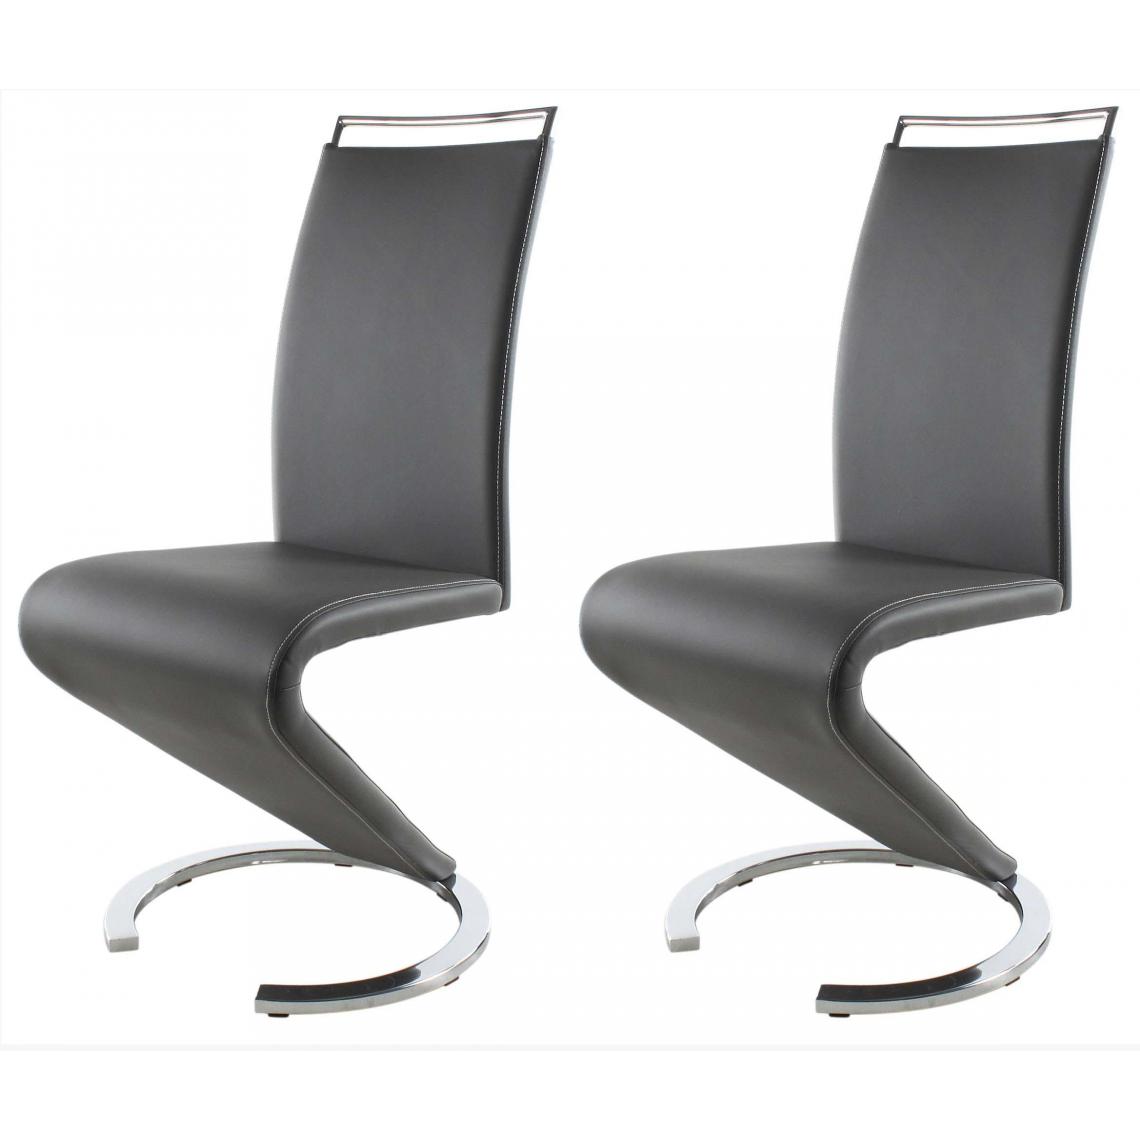 ATHM DESIGN - Lot de 2 - Chaise SIDNEY Gris - assise Cuir PU pieds Metal - Chaises